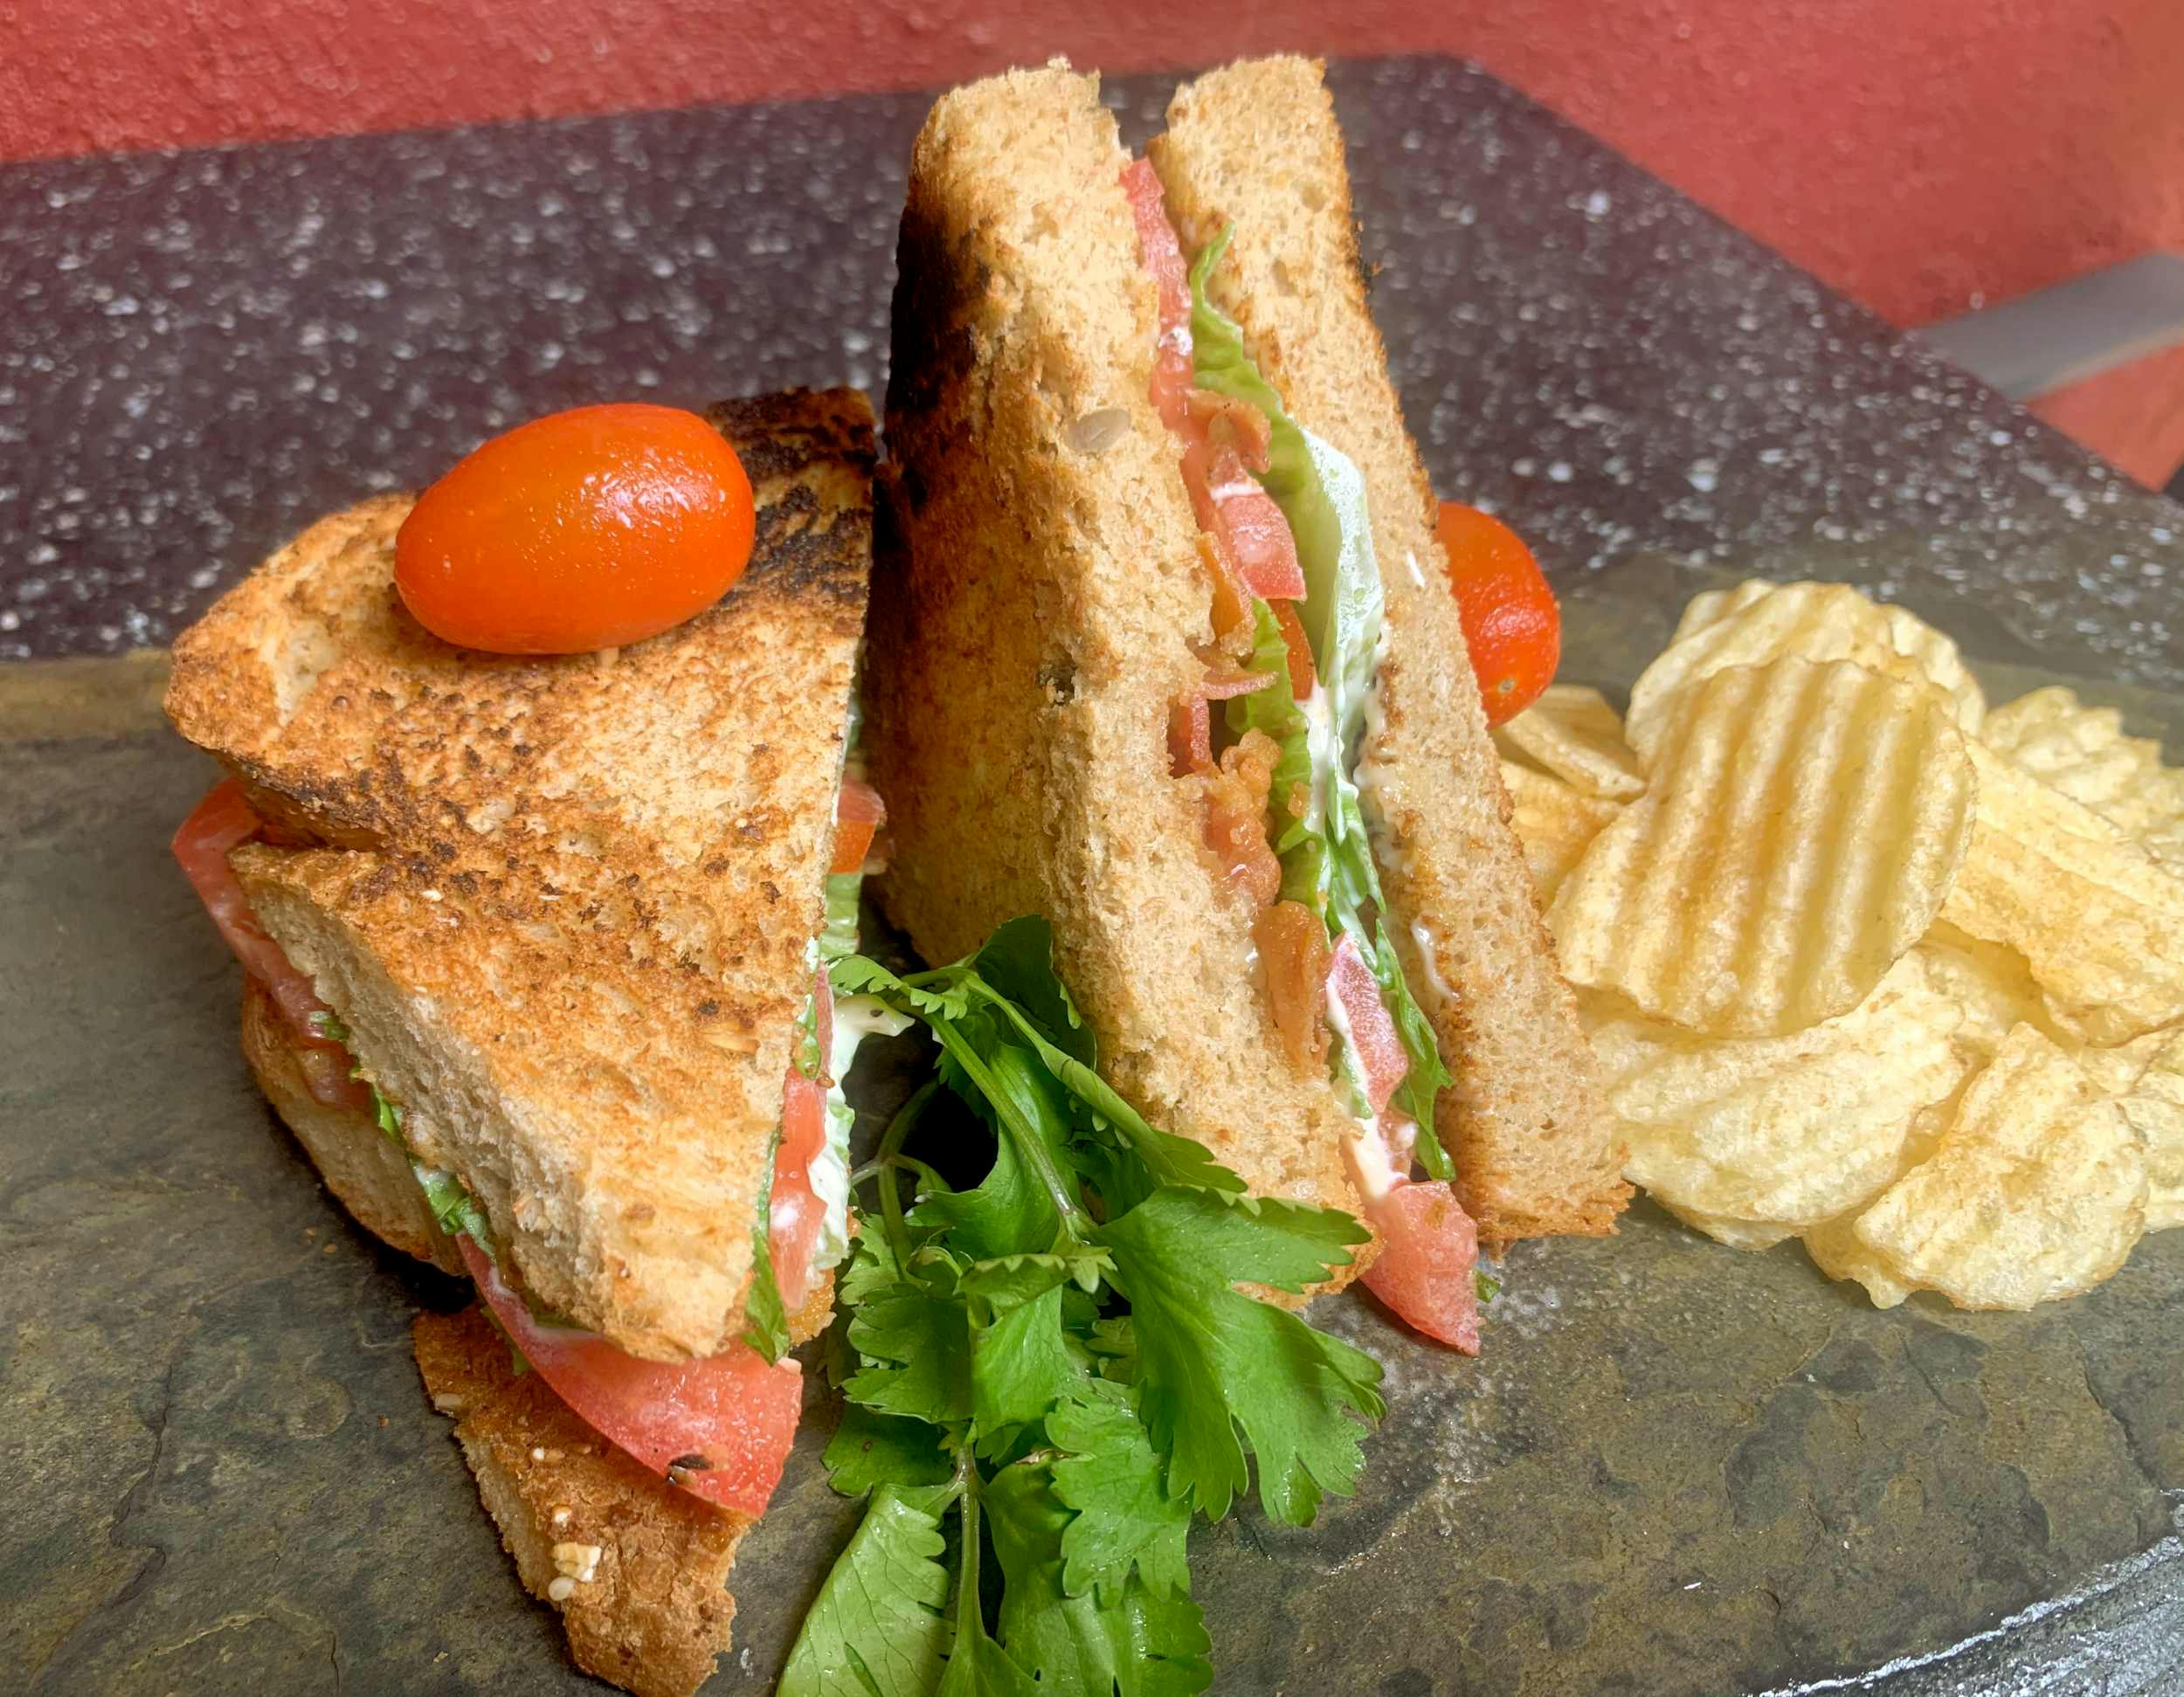 Sandwich tocino jitomate y lechuga con pan artesanal / BLT sandwich on artisan baked bread